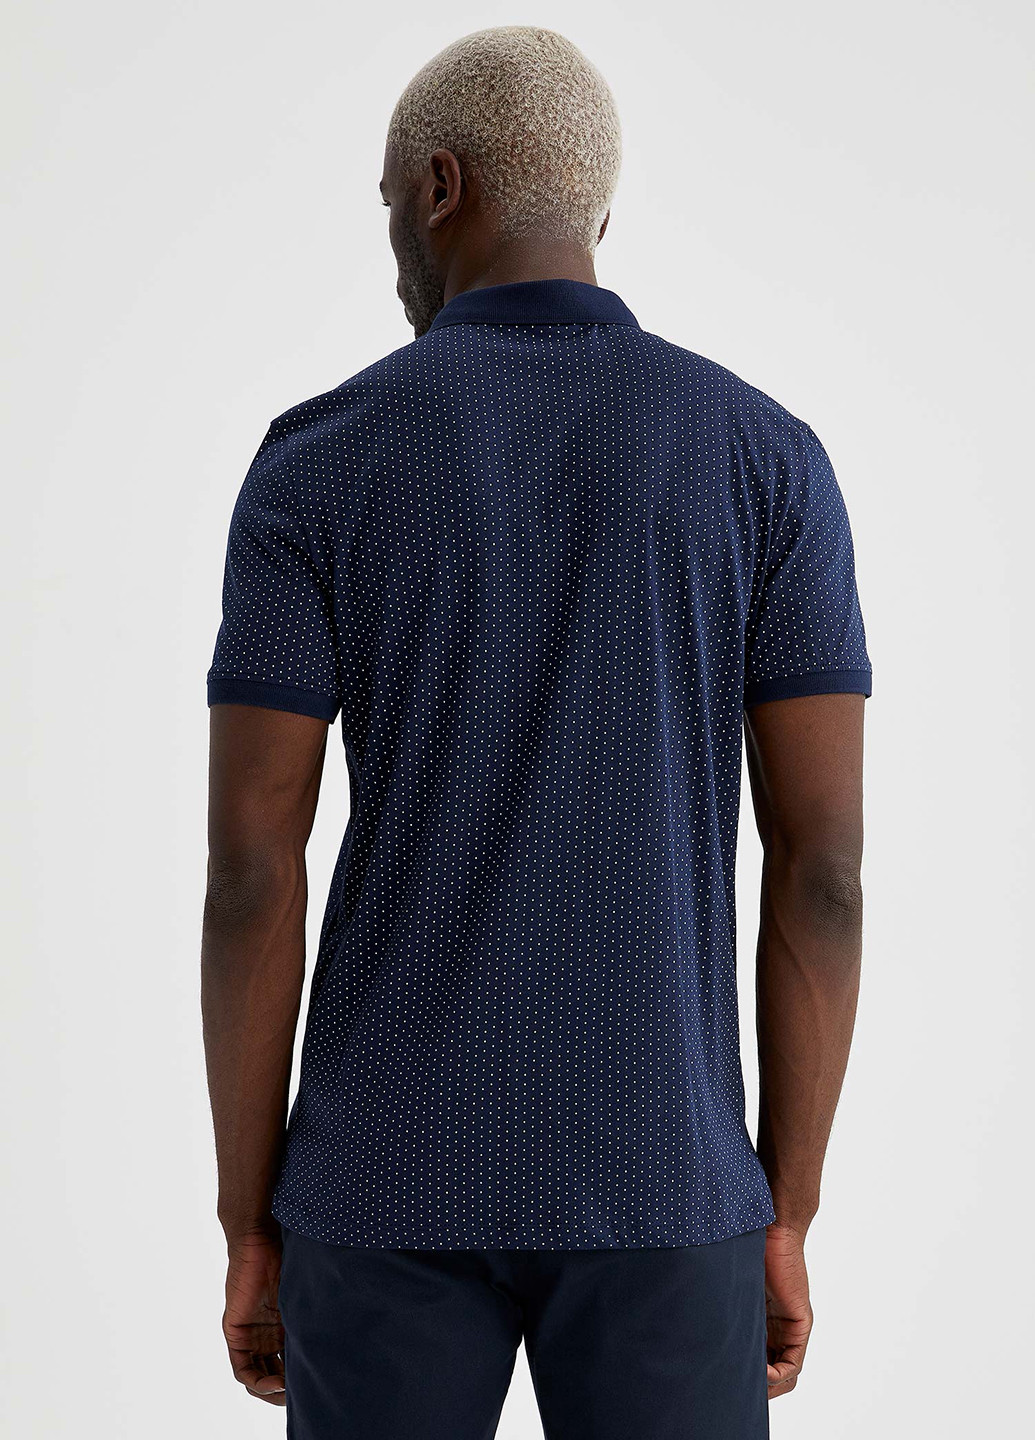 Темно-синяя футболка-поло для мужчин DeFacto в горошек